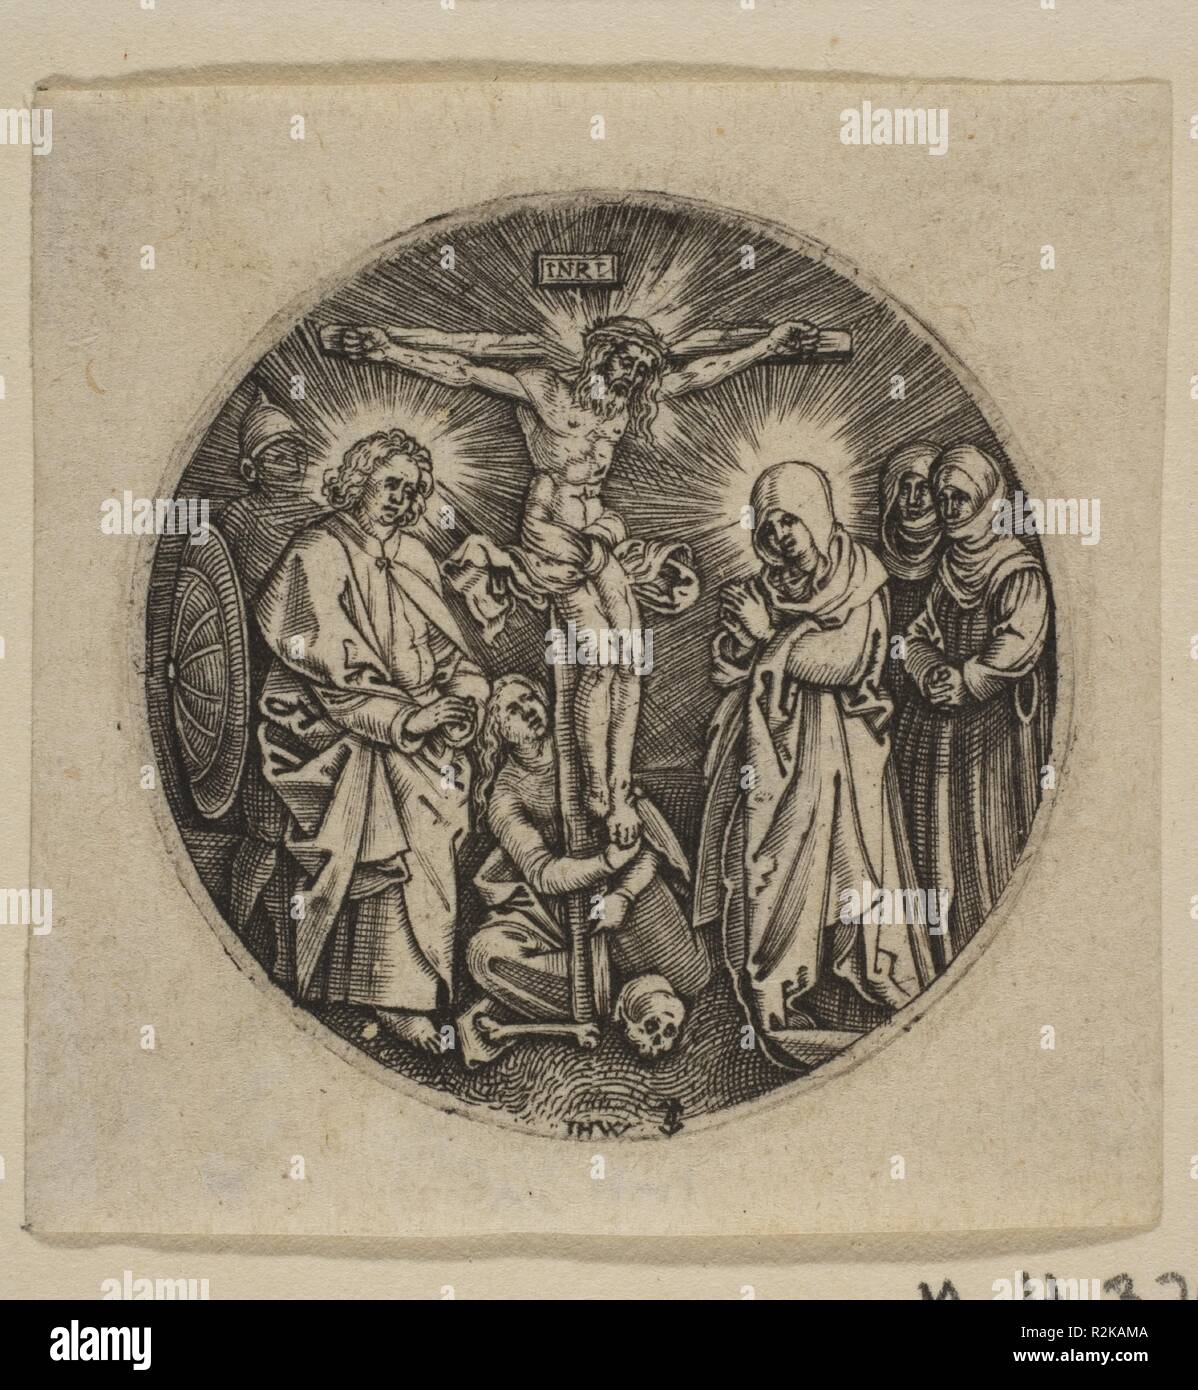 La Crocifissione (rotondo) (copy). Artista: Dopo Albrecht Dürer (Tedesco, 1471-1528 Norimberga Norimberga); Jan (Johannes) Wierix (Netherlandish, Anversa 1549-1615 Bruxelles). Dimensioni: foglio: 1 3/4 x 1 3/4 in. (4,5 × 4,5 cm). Data: n.d.. Museo: Metropolitan Museum of Art di New York, Stati Uniti d'America. Autore: Dopo Albrecht Dürer. Jan (Johannes) Wierix. Anonimo, tedesco, del XVI secolo. Hieronymus WIERIX e Antonie Wierix dopo Albrecht Dürer. Foto Stock